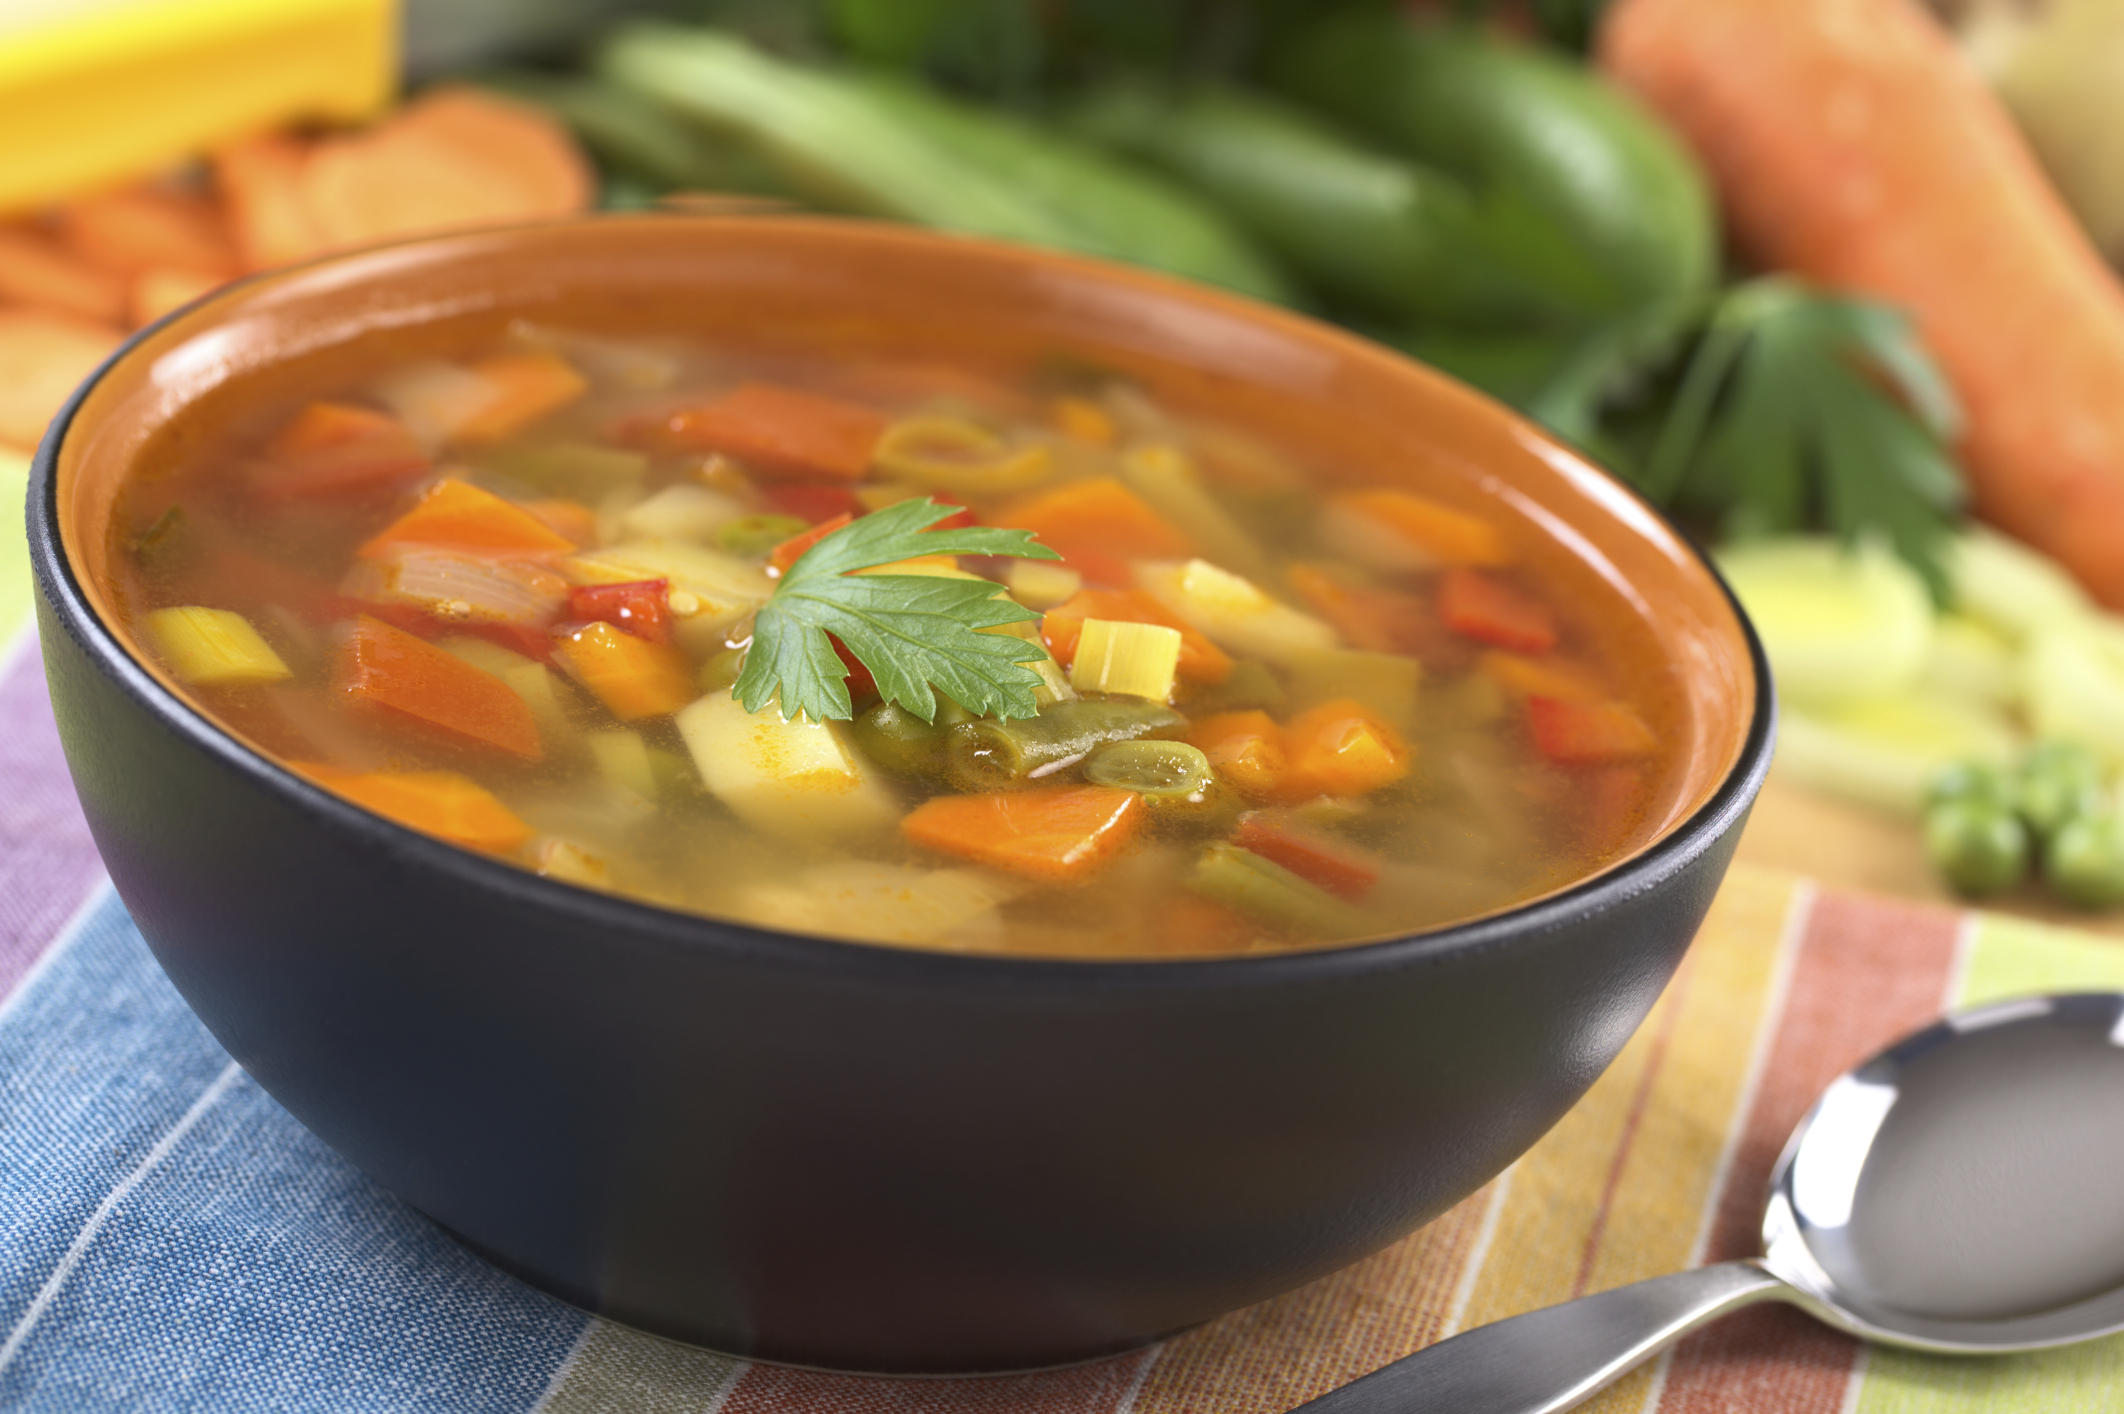 Sabia que comer sopa emagrece?